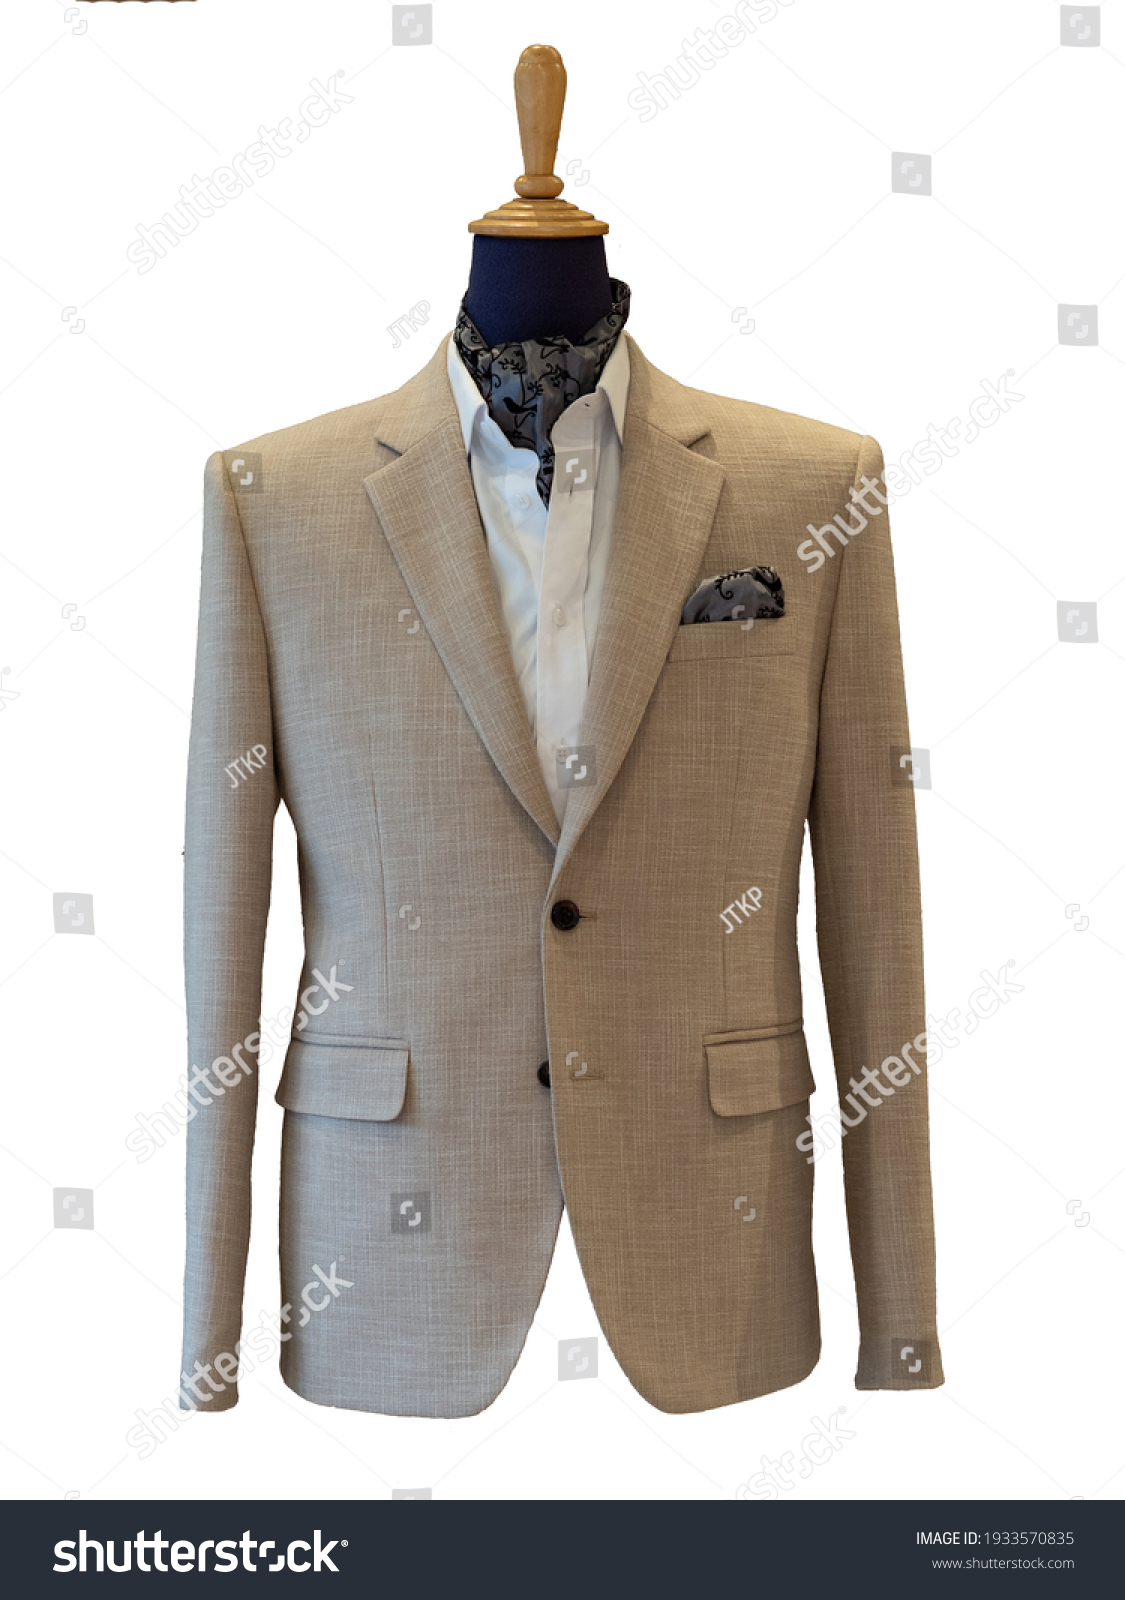 1,841 Beige suit groom Images, Stock Photos & Vectors | Shutterstock